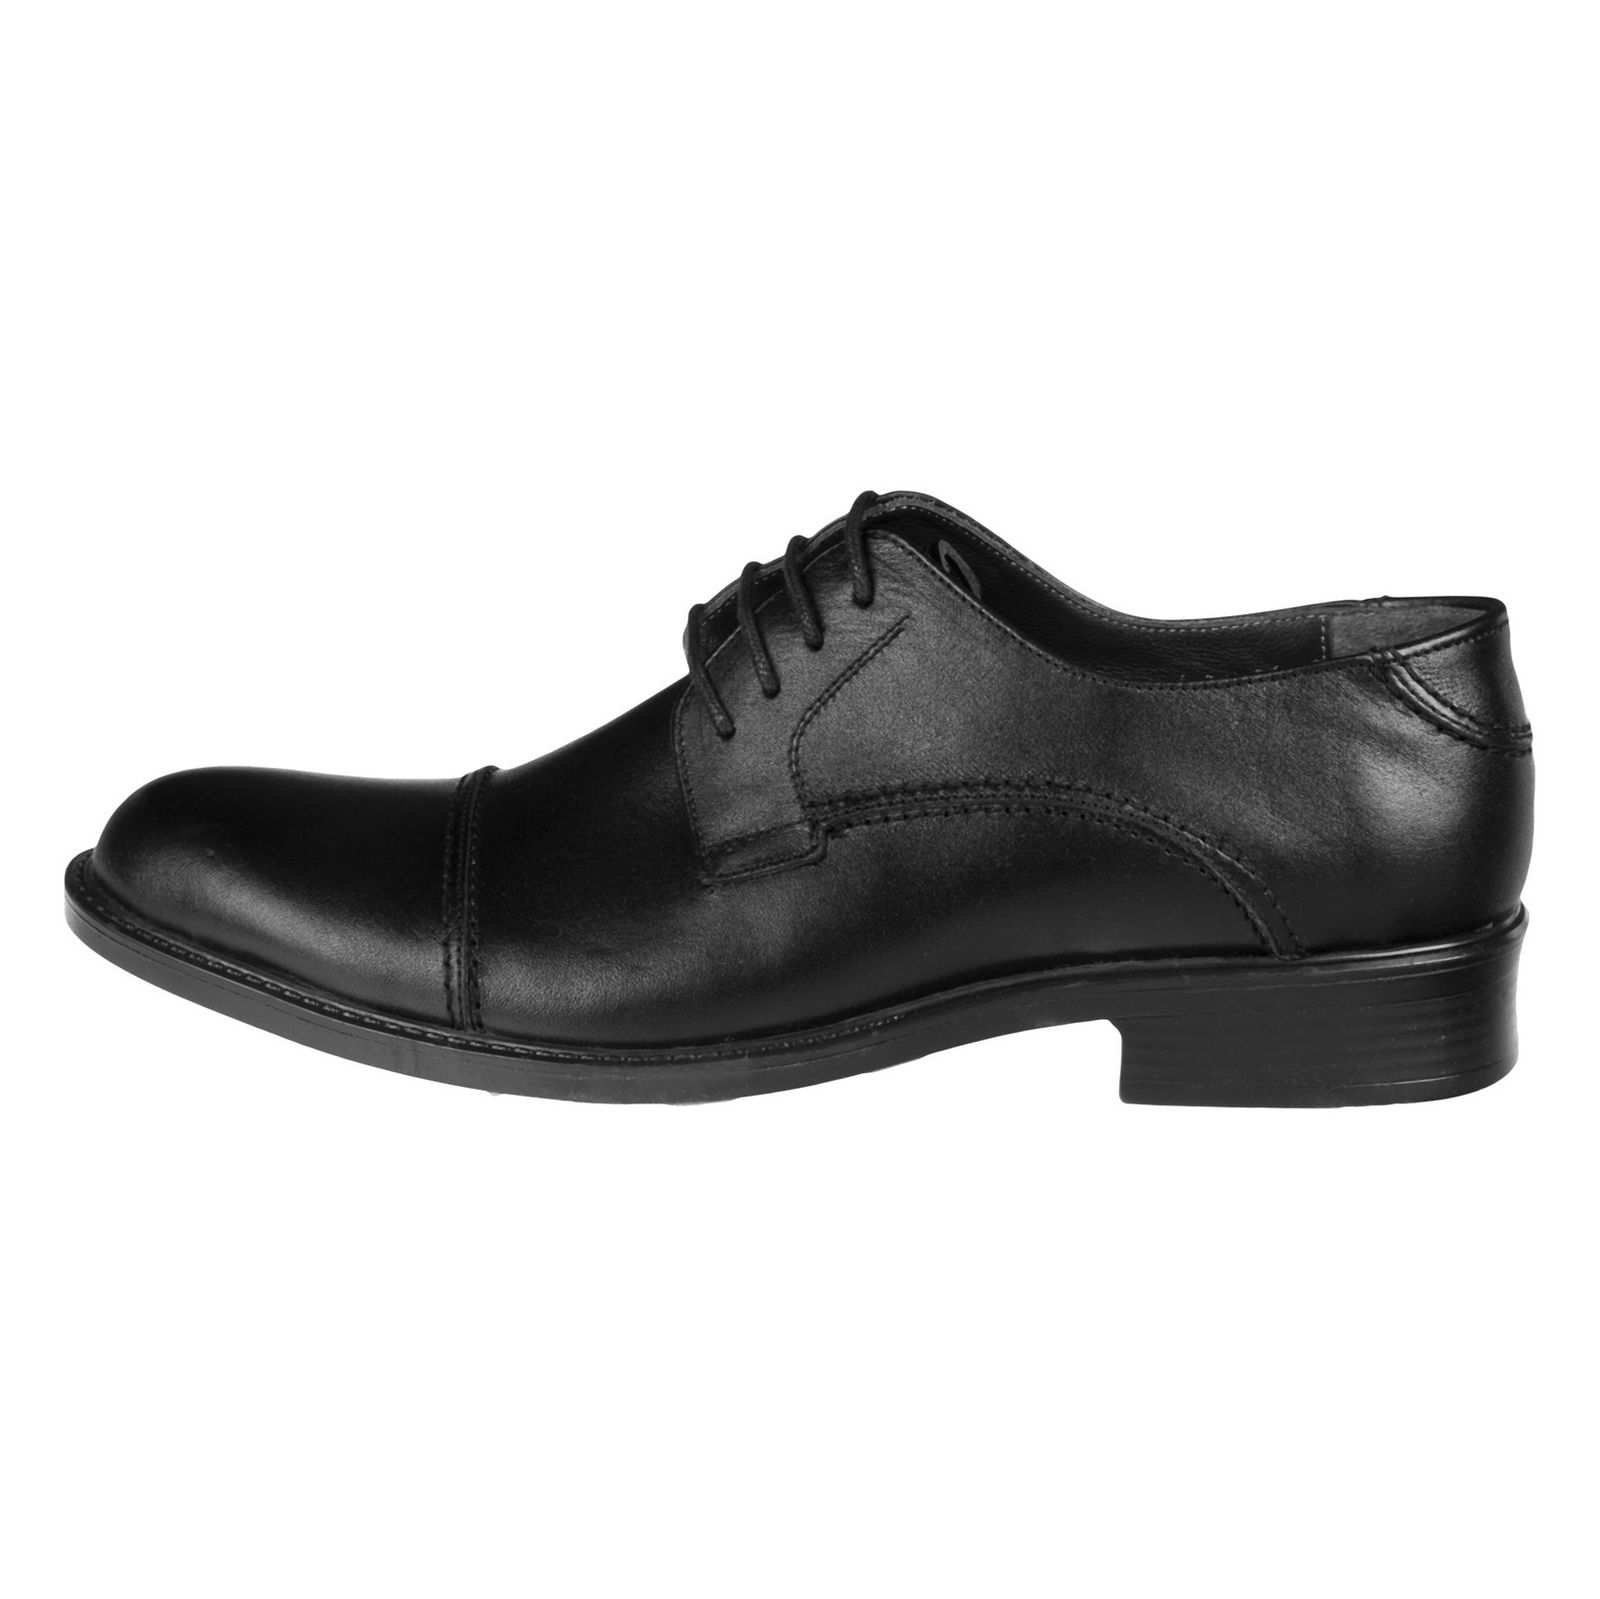 کفش مردانه دلفارد مدل 7219c503-101 - مشکی - 2